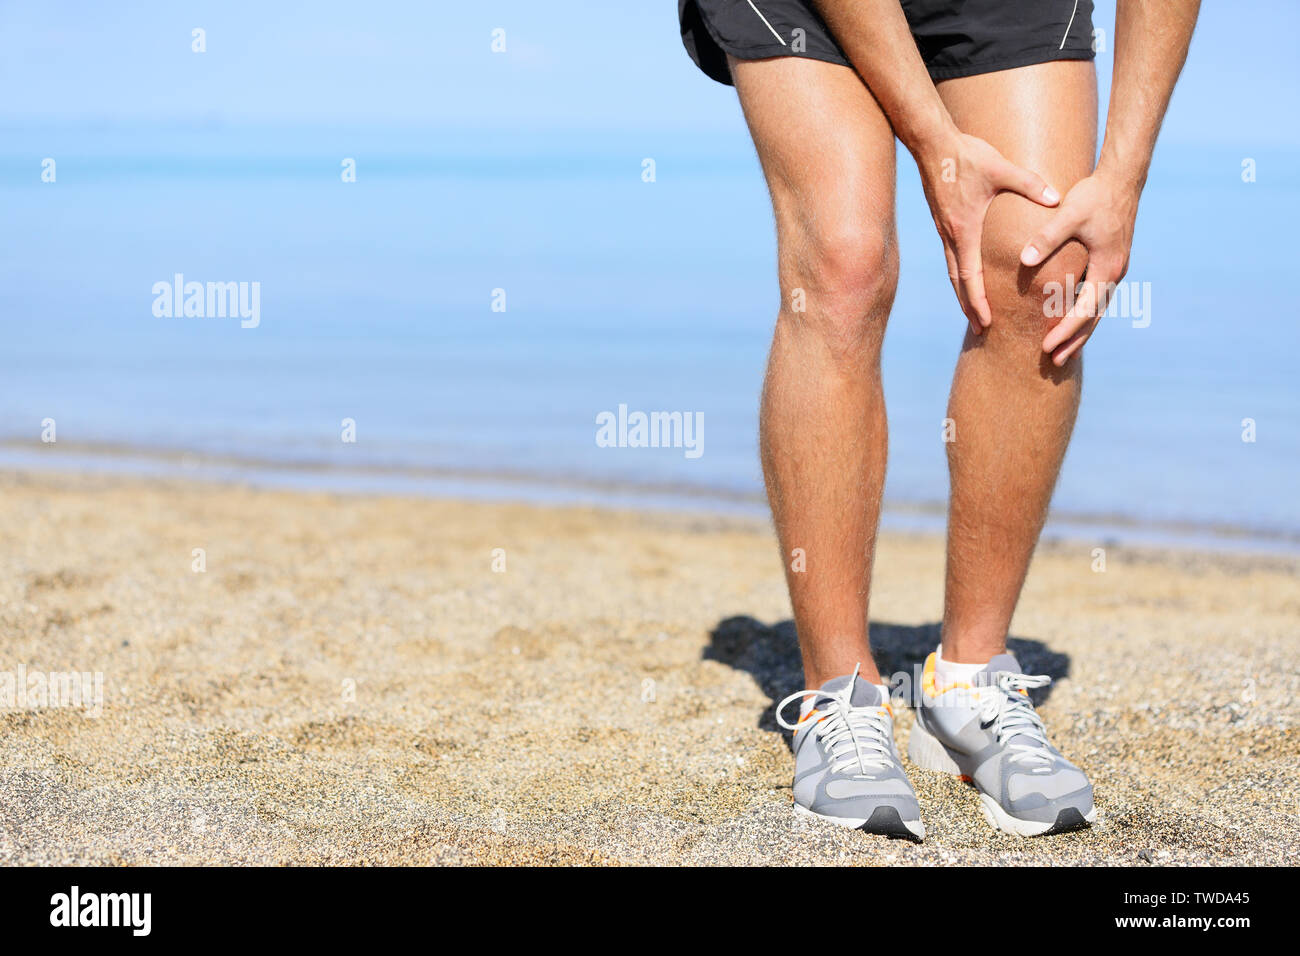 Ausführen von Verletzungen - Mann joggen mit Knieschmerzen. Nahaufnahme der Runner verletzt Jogging am Strand seine Knie zu schmerzen. Männliche fitness Sportler. Stockfoto